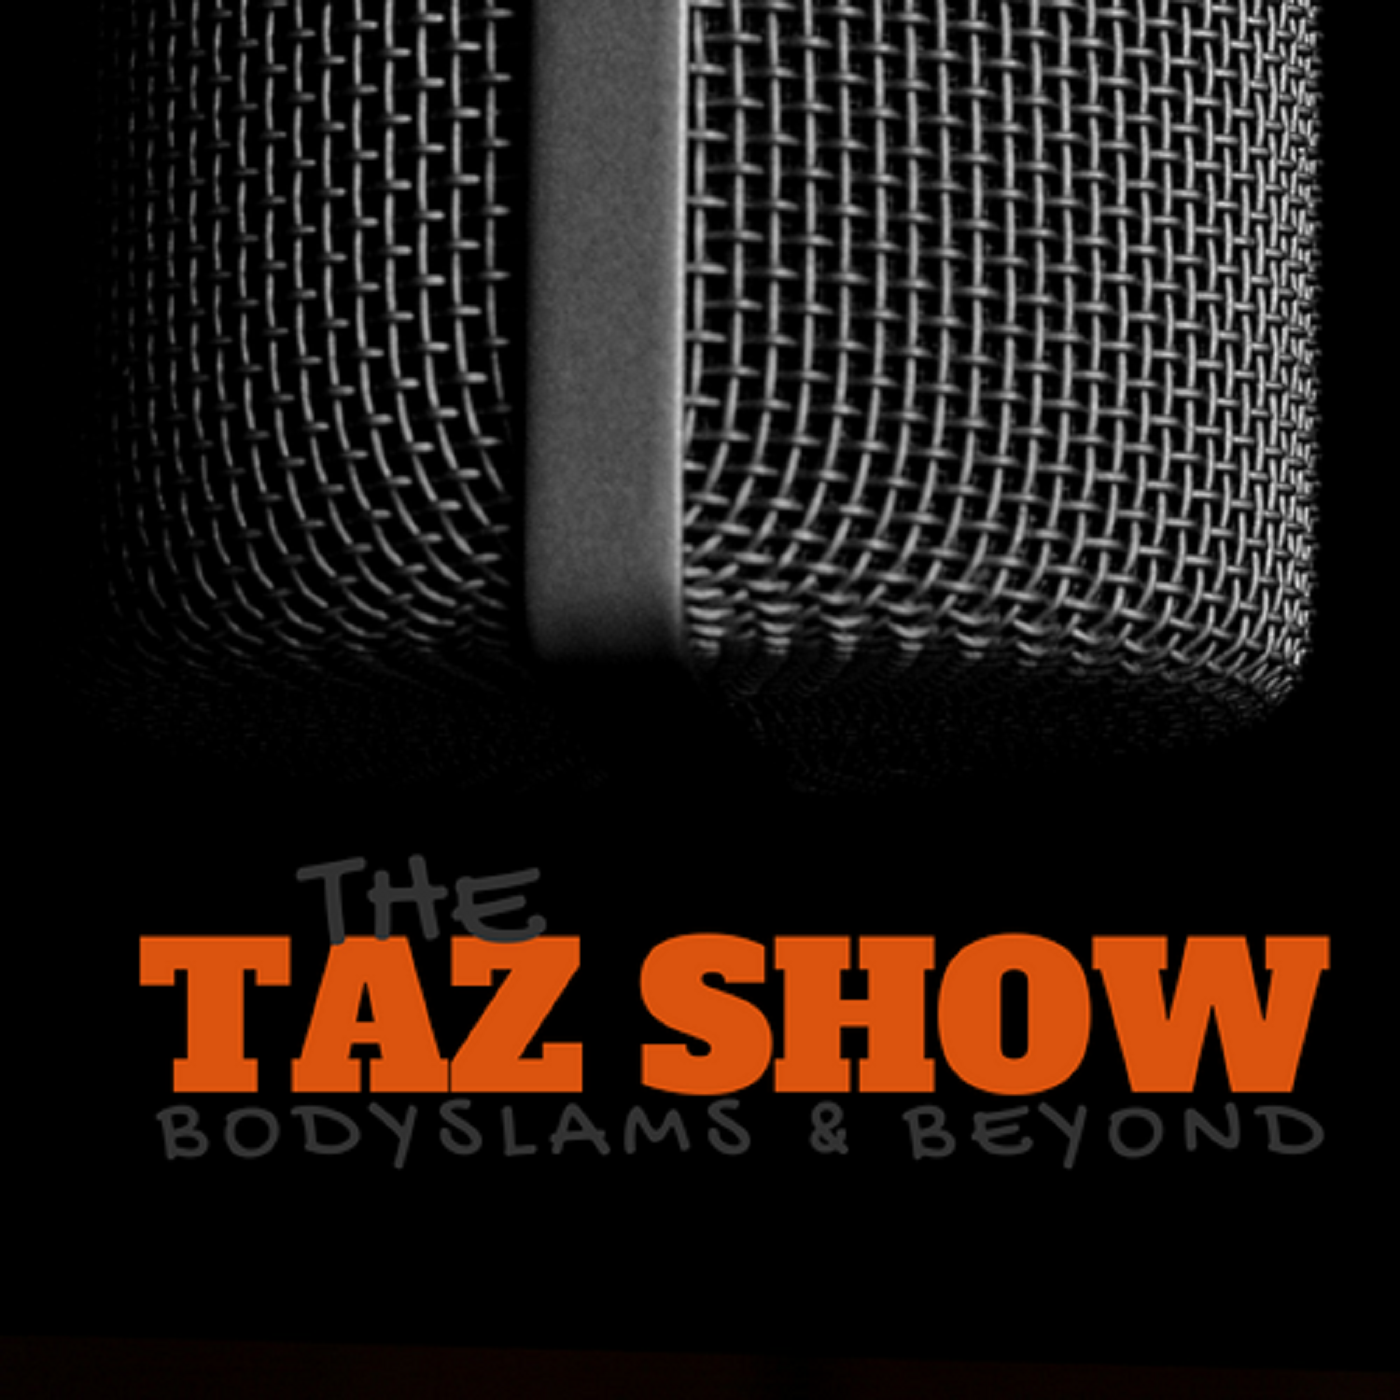 The Taz Show, Wednesday, September 30th 2015